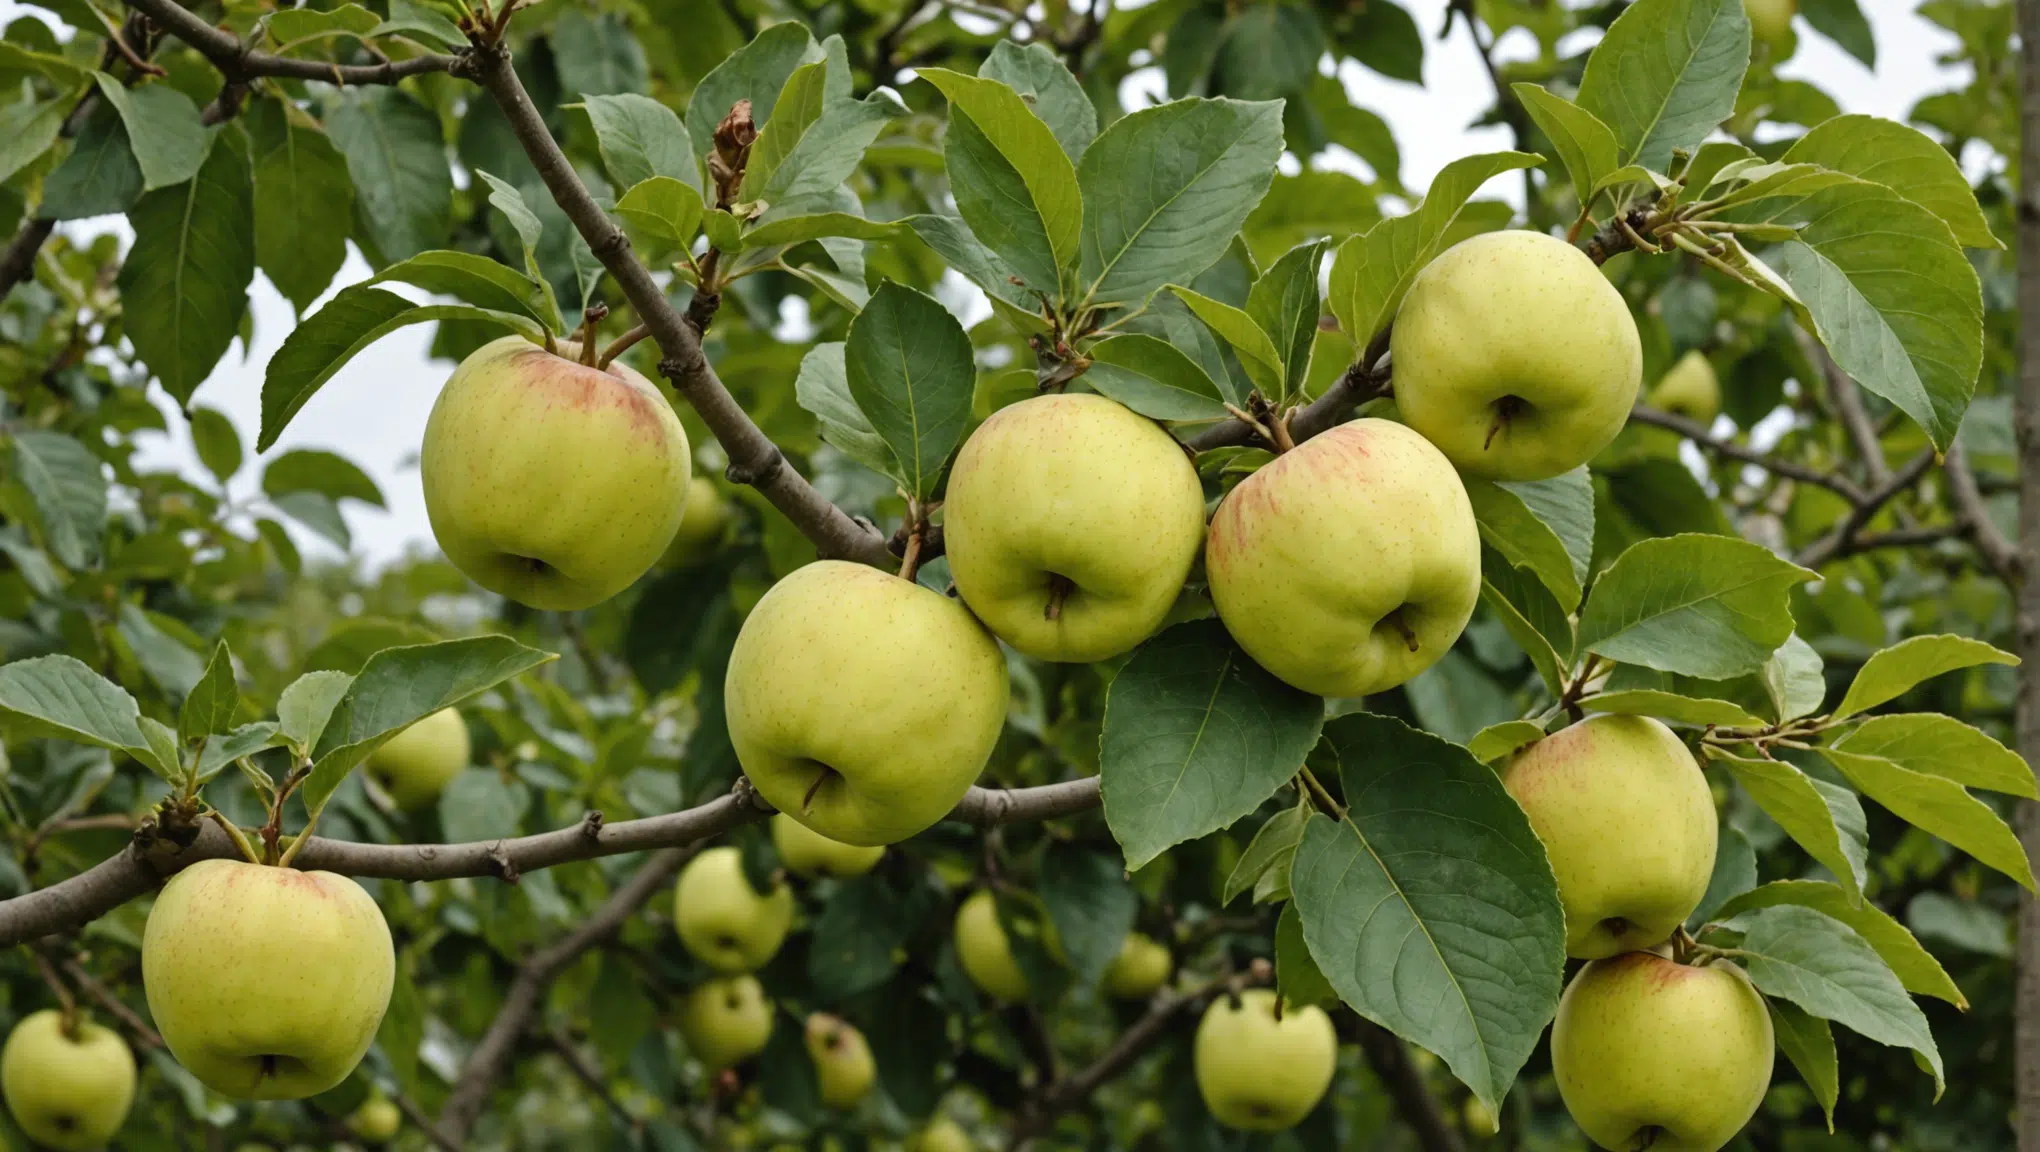 découvrez une astuce infaillible pour assurer une récolte abondante de pommes dans votre jardin et profiter d'une abondance de fruits délicieux !